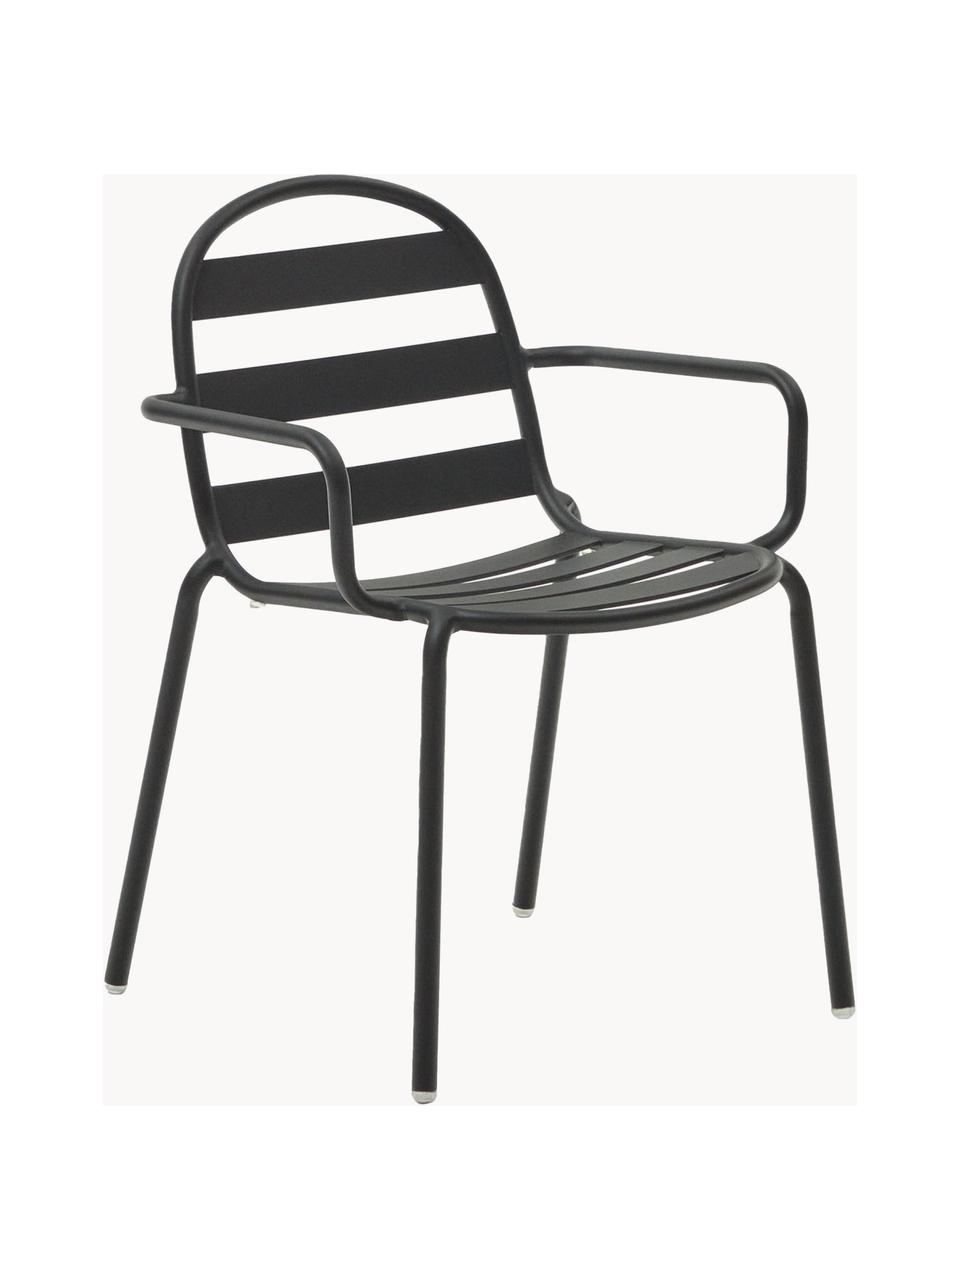 Ogrodowe krzesło z podłokietnikami Joncols, Aluminium malowane proszkowo, Antracytowy, S 61 x G 58 cm